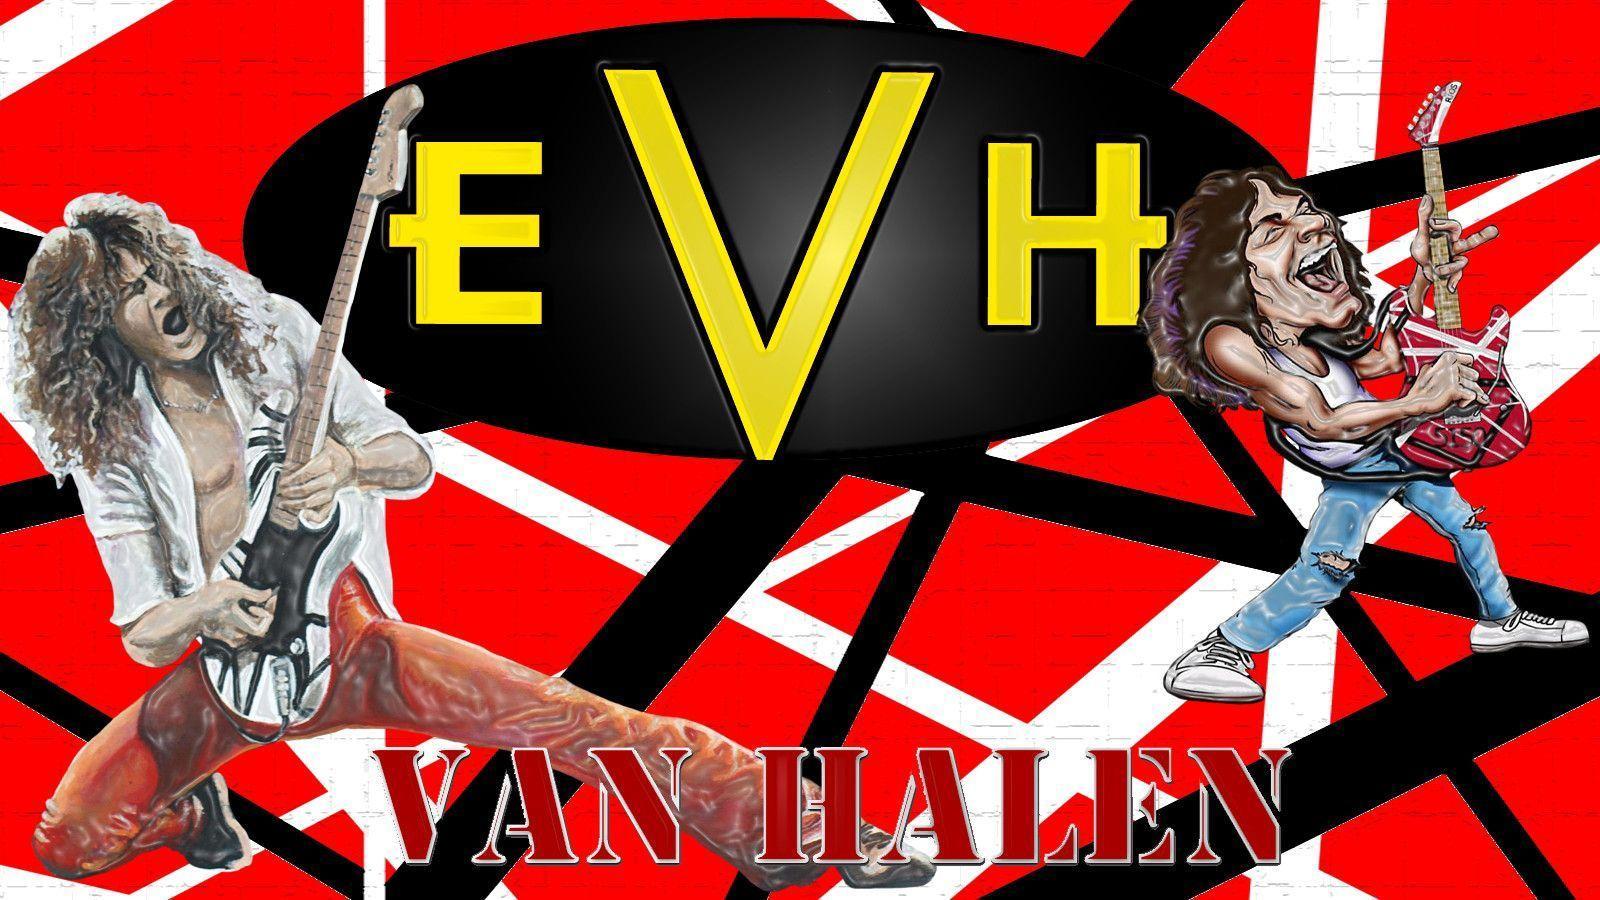 Eddie Van Halen Wallpapers - Wallpaper Cave